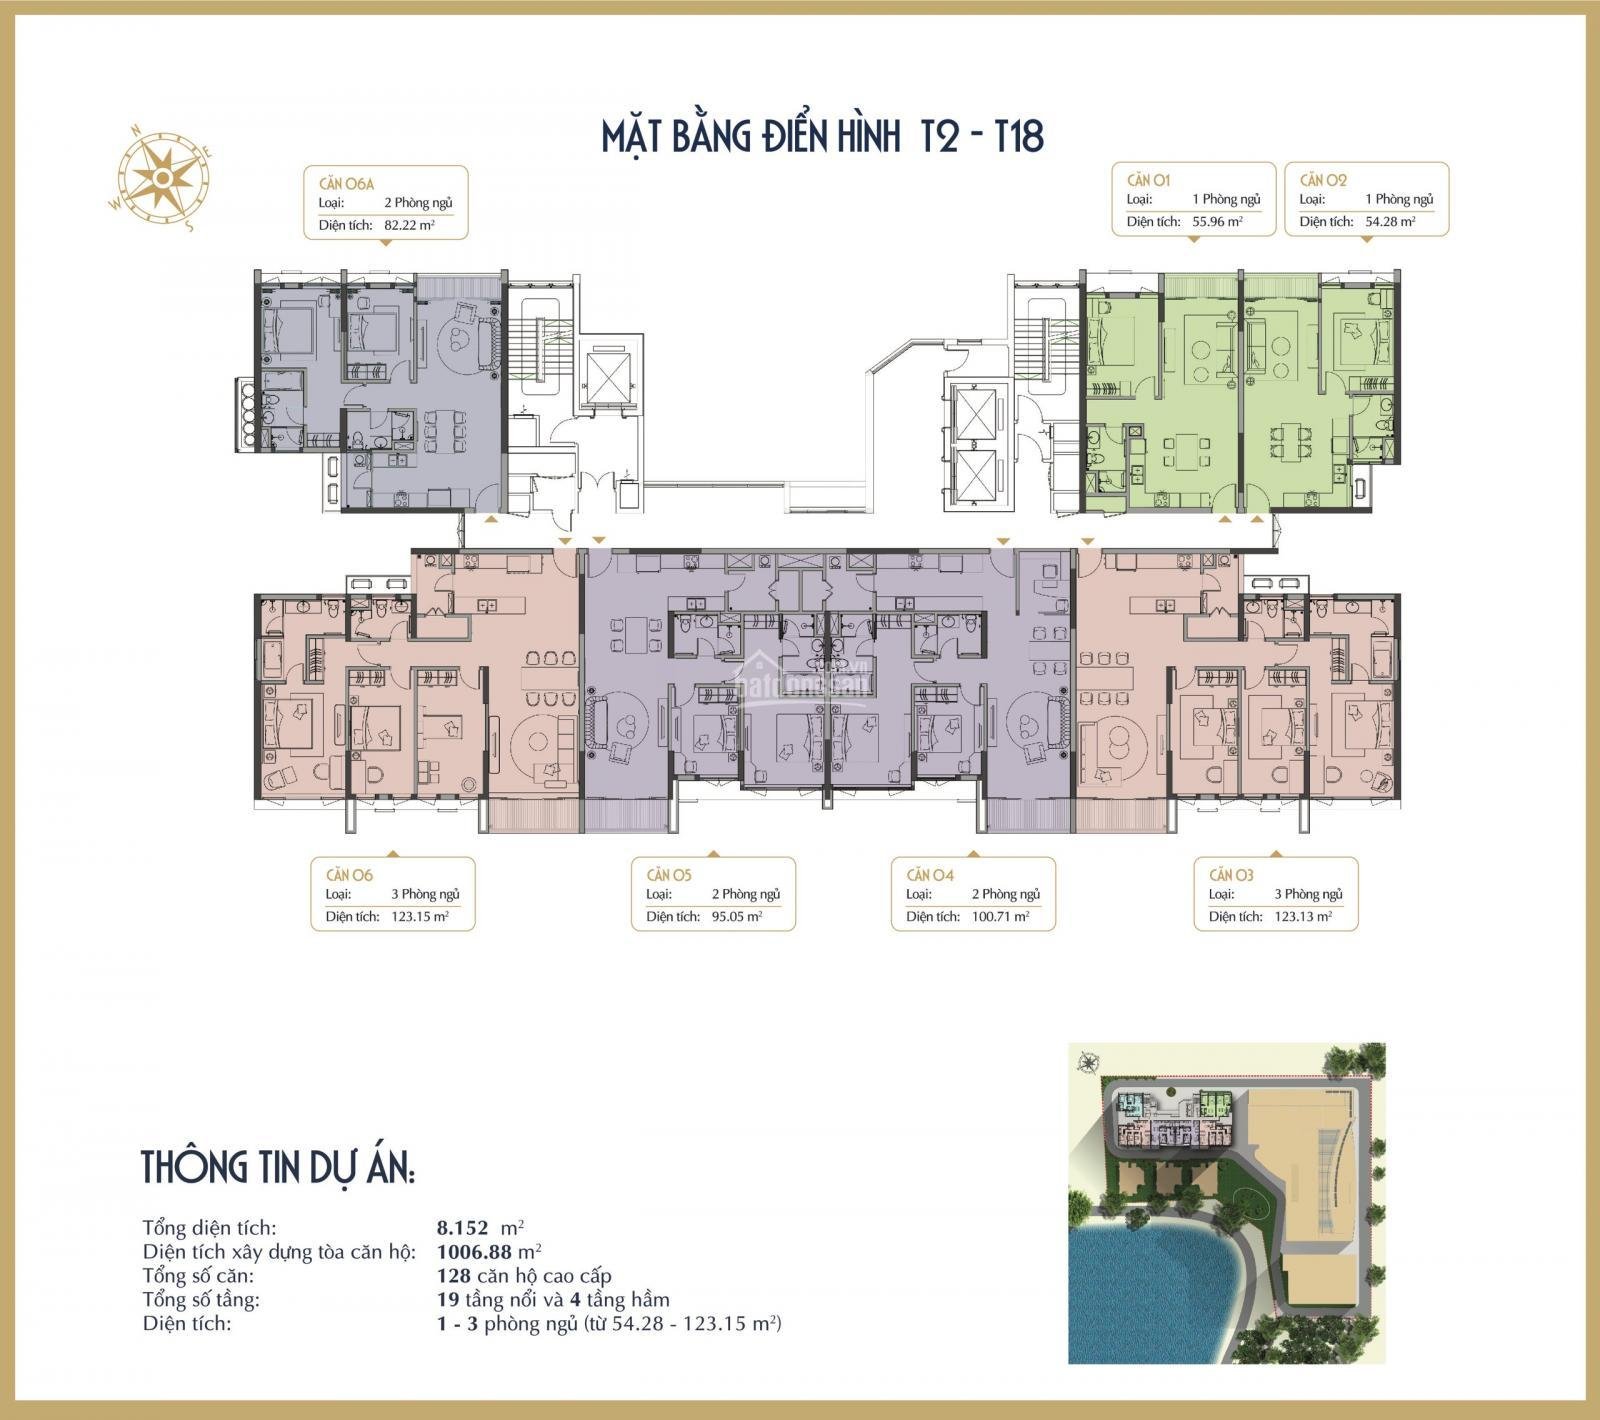 Bán chung cư trung tâm Ba Đình BRG Grand Plaza 16 Láng Hạ, view Hồ Thành Công từ 90tr/m2, vay LS 0% 4